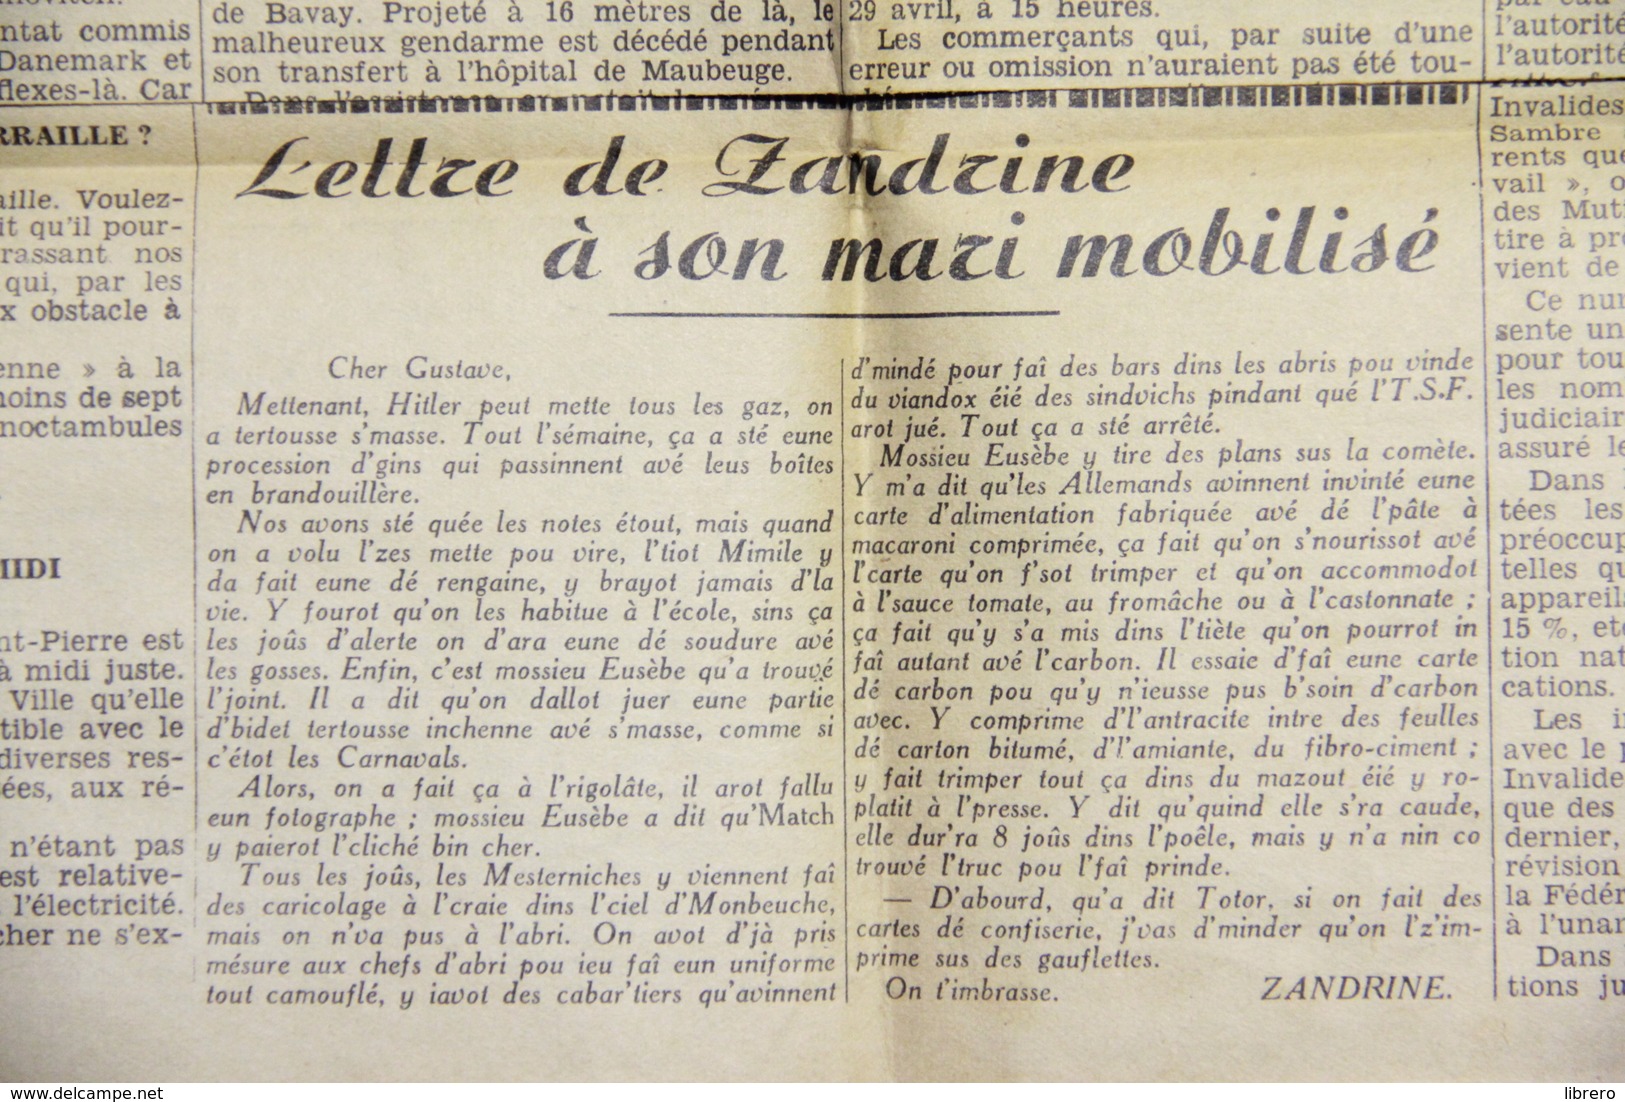 Maubeuge / Avesnes / Le Courrier / 14 numéros / 1940.